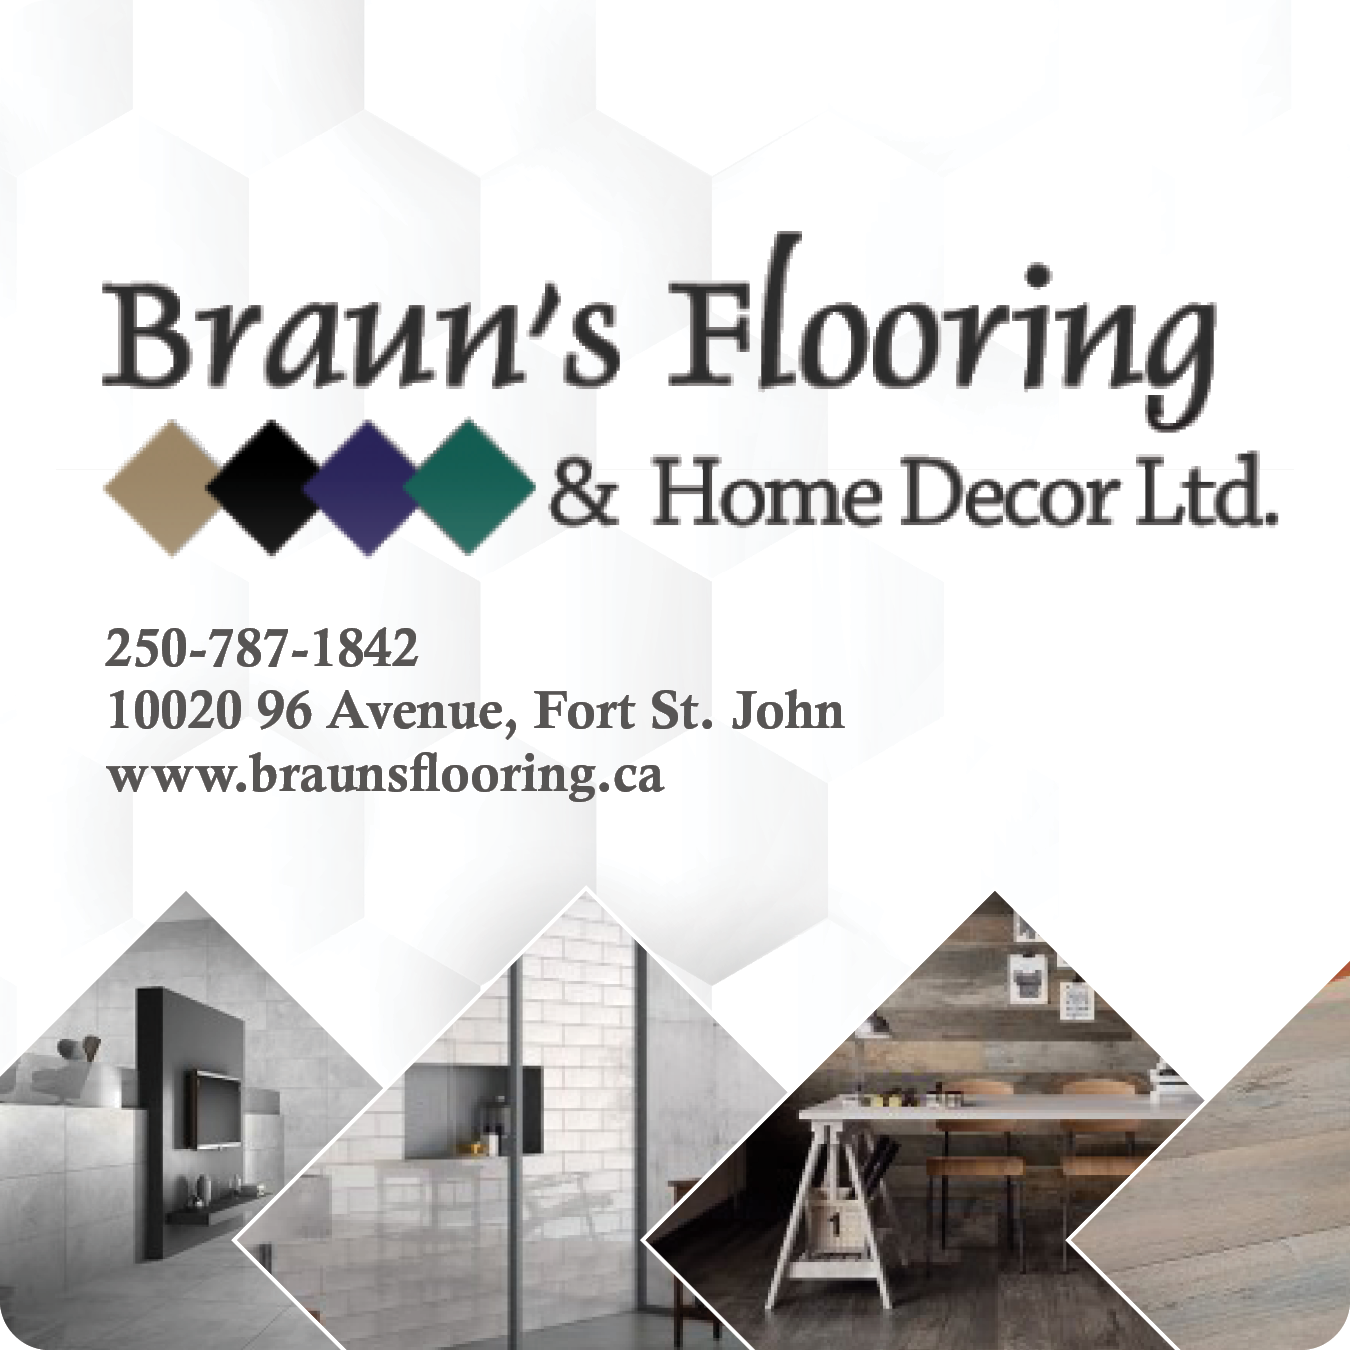 Braun's Flooring & Home Decor